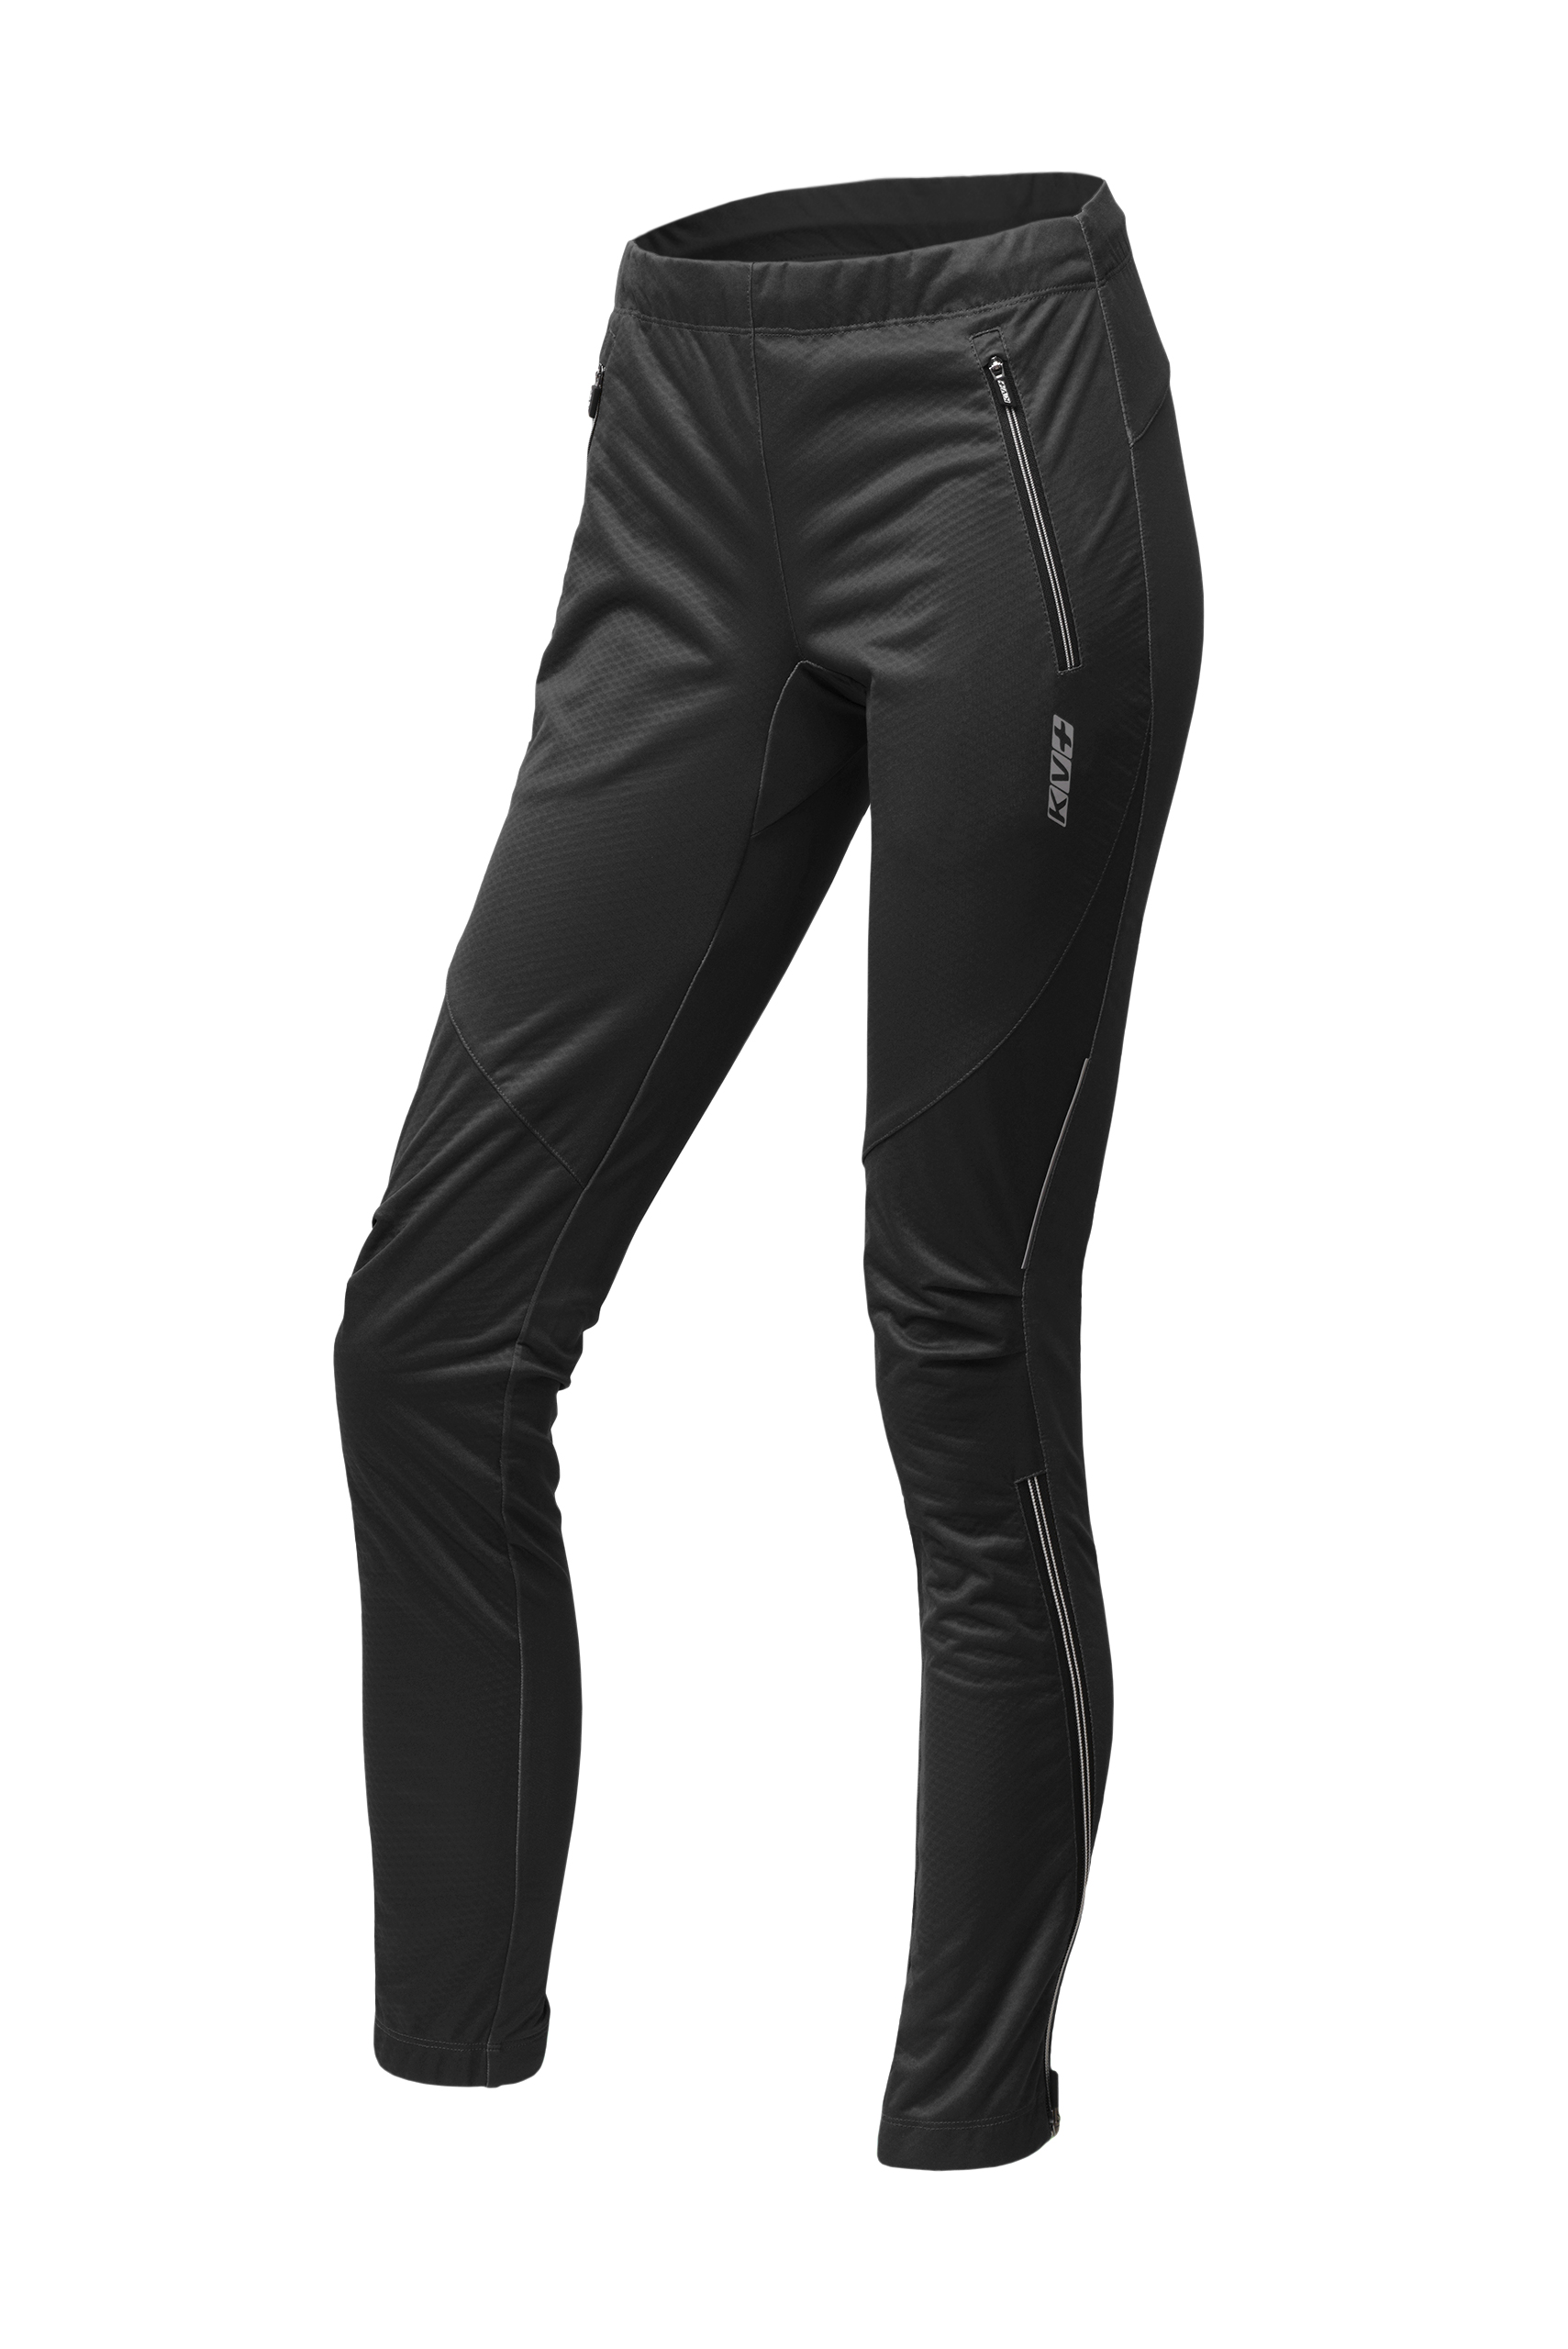 Спортивные брюки женские KV+ Tornado pants 22 черные XS